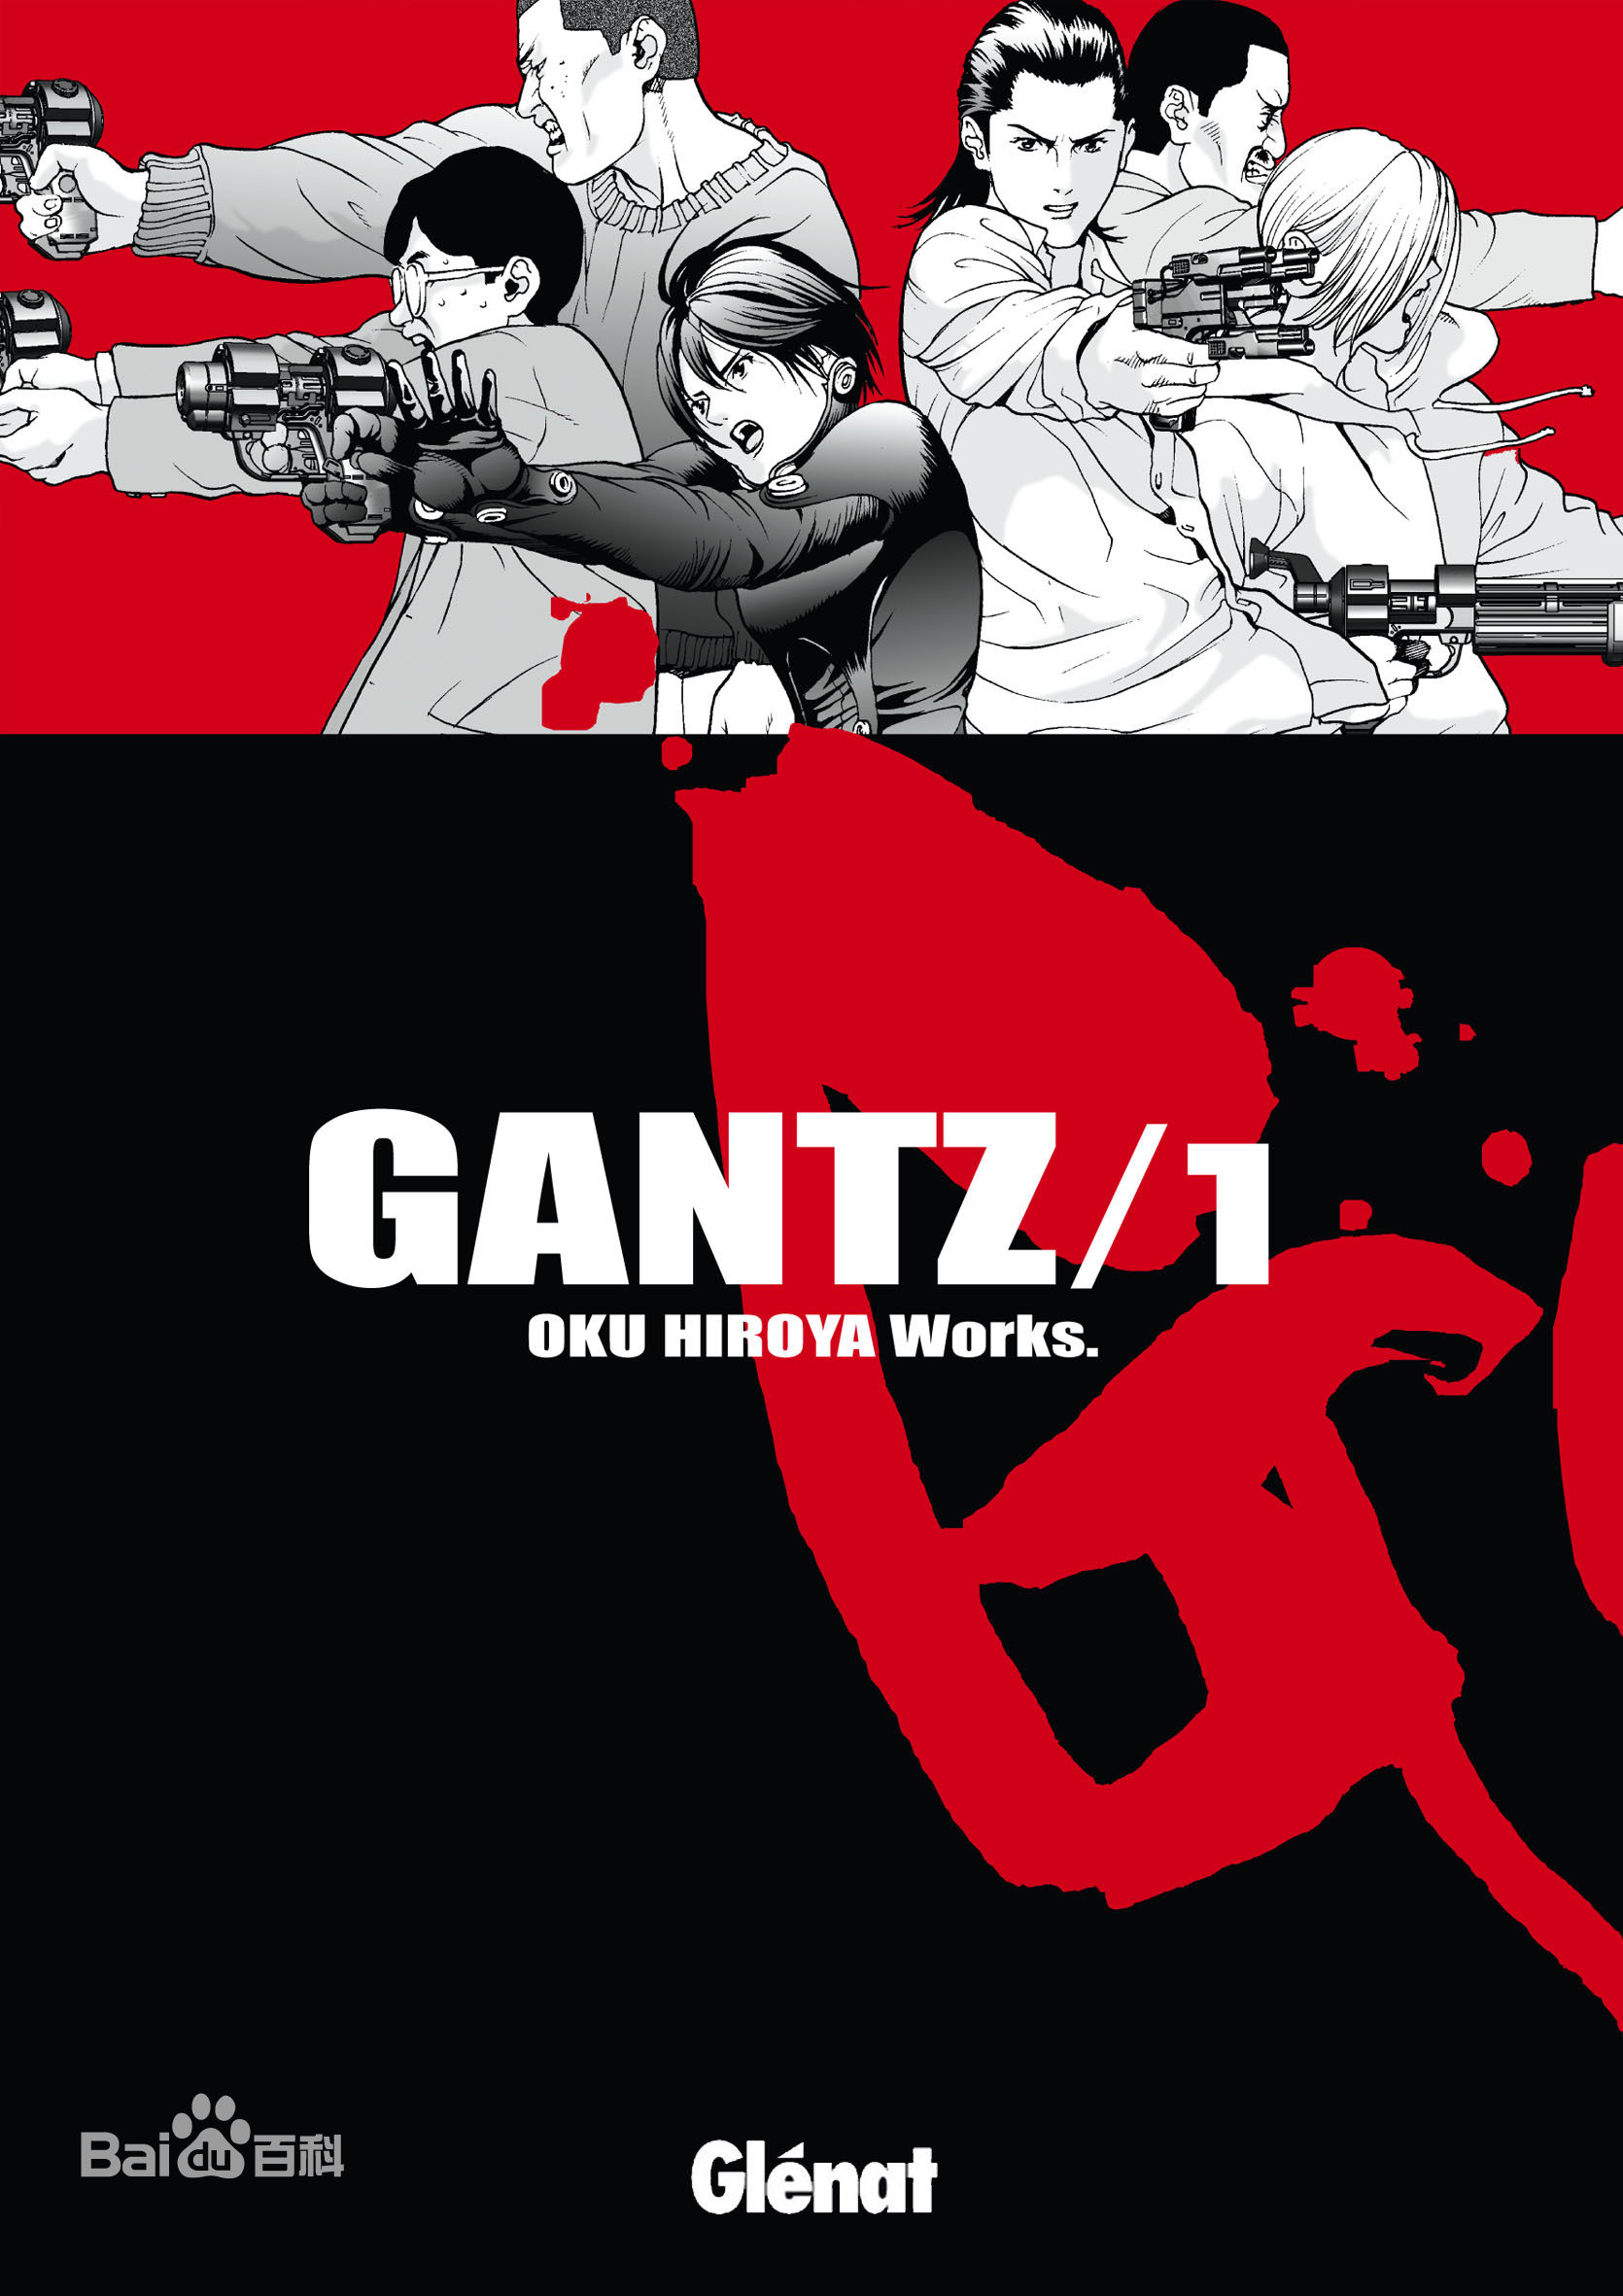 55a60b0cdeacd - GANTZ ~FullColor~ [09/37v][106/383][499mg] +NovelExa - Manga [Descarga]